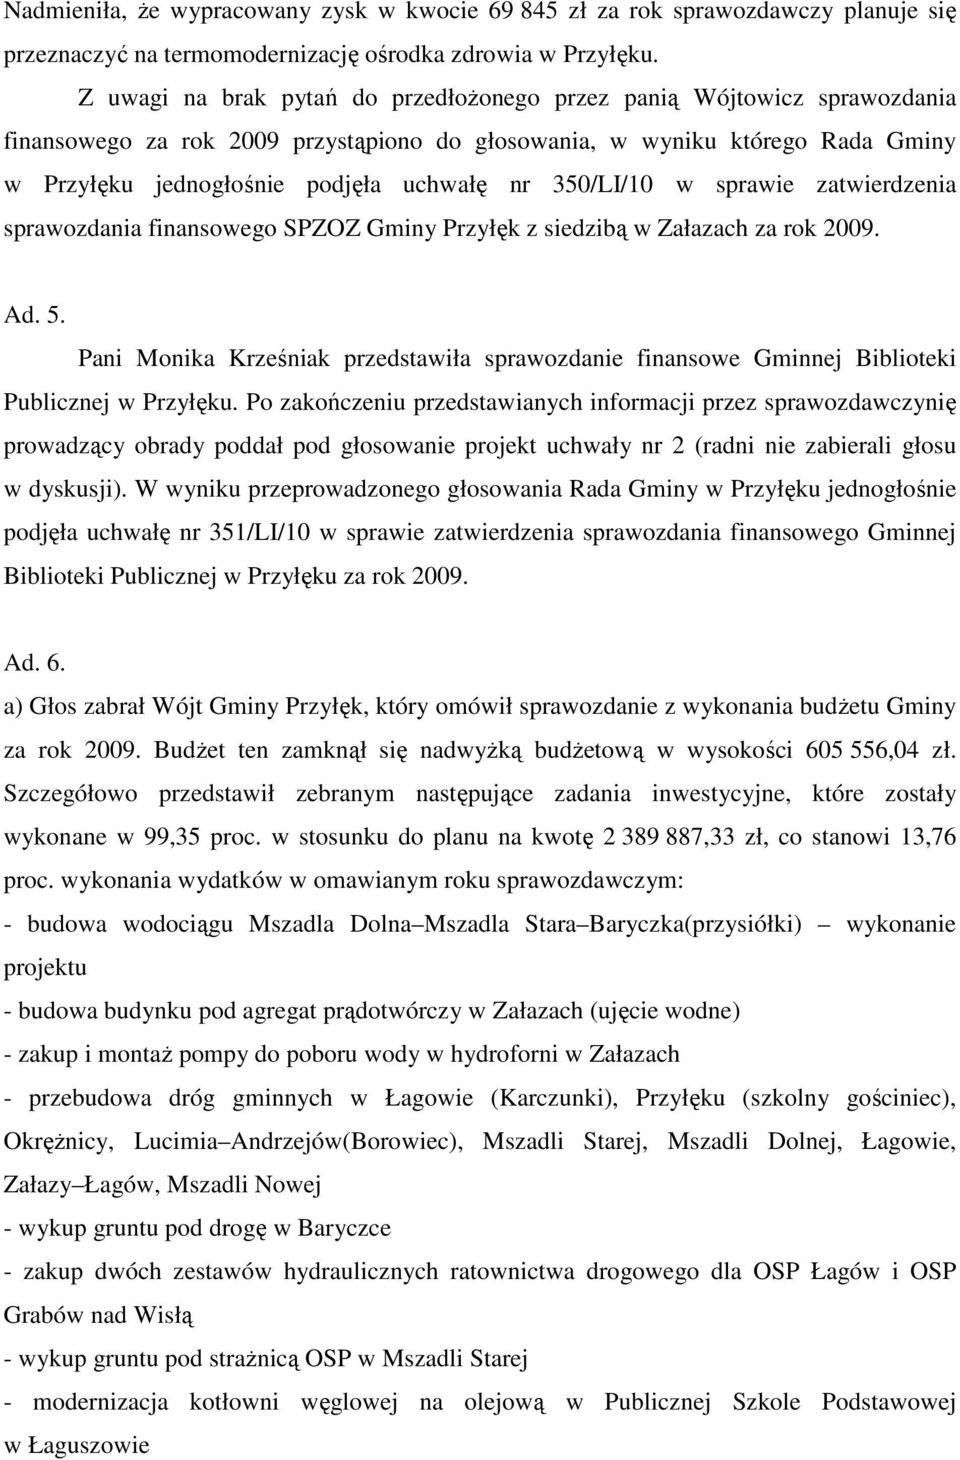 350/LI/10 w sprawie zatwierdzenia sprawozdania finansowego SPZOZ Gminy Przyłęk z siedzibą w Załazach za rok 2009. Ad. 5.